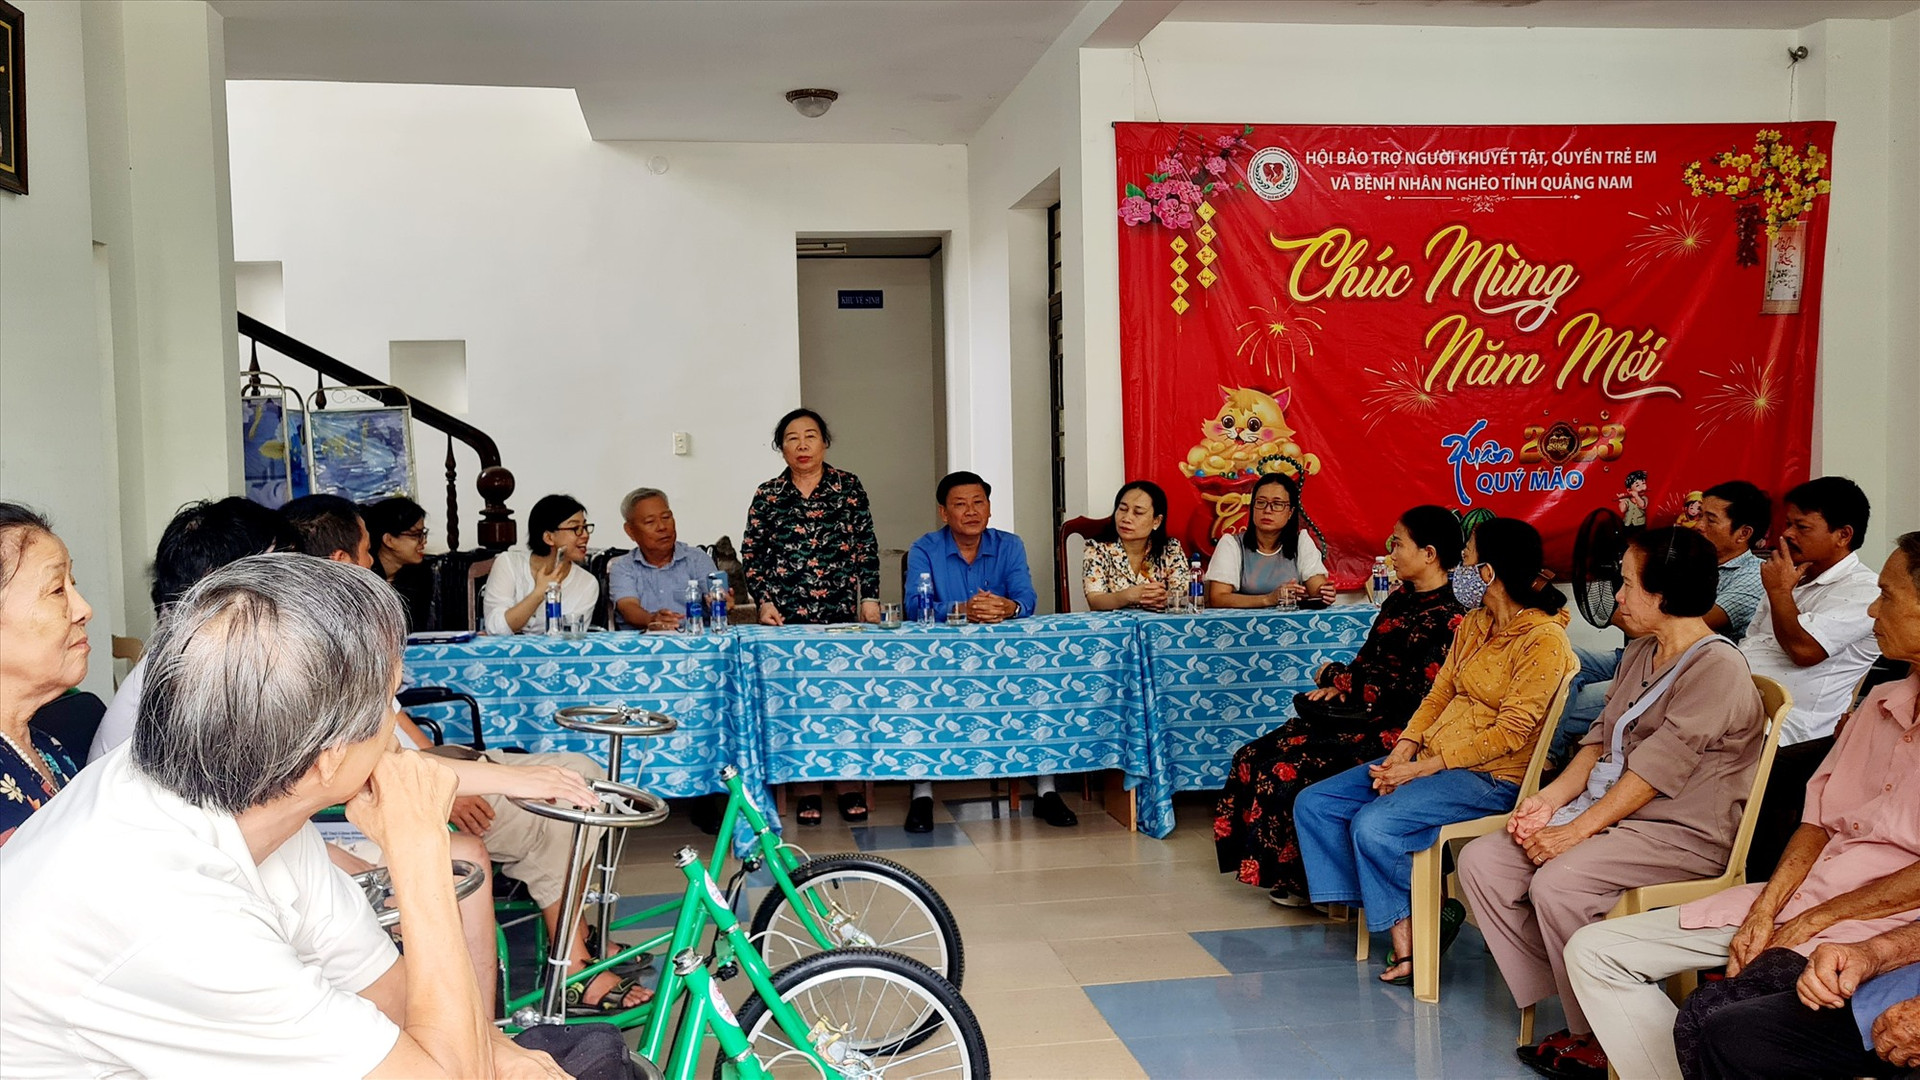 Bà Hồ Thị Thanh Lâm - Chủ tịch Hội Bảo trợ Người khuyết tật, quyền trẻ em và bệnh nhân nghèo tỉnh Quảng Nam phát biểu tại buổi lễ. Ảnh: H.LIÊN